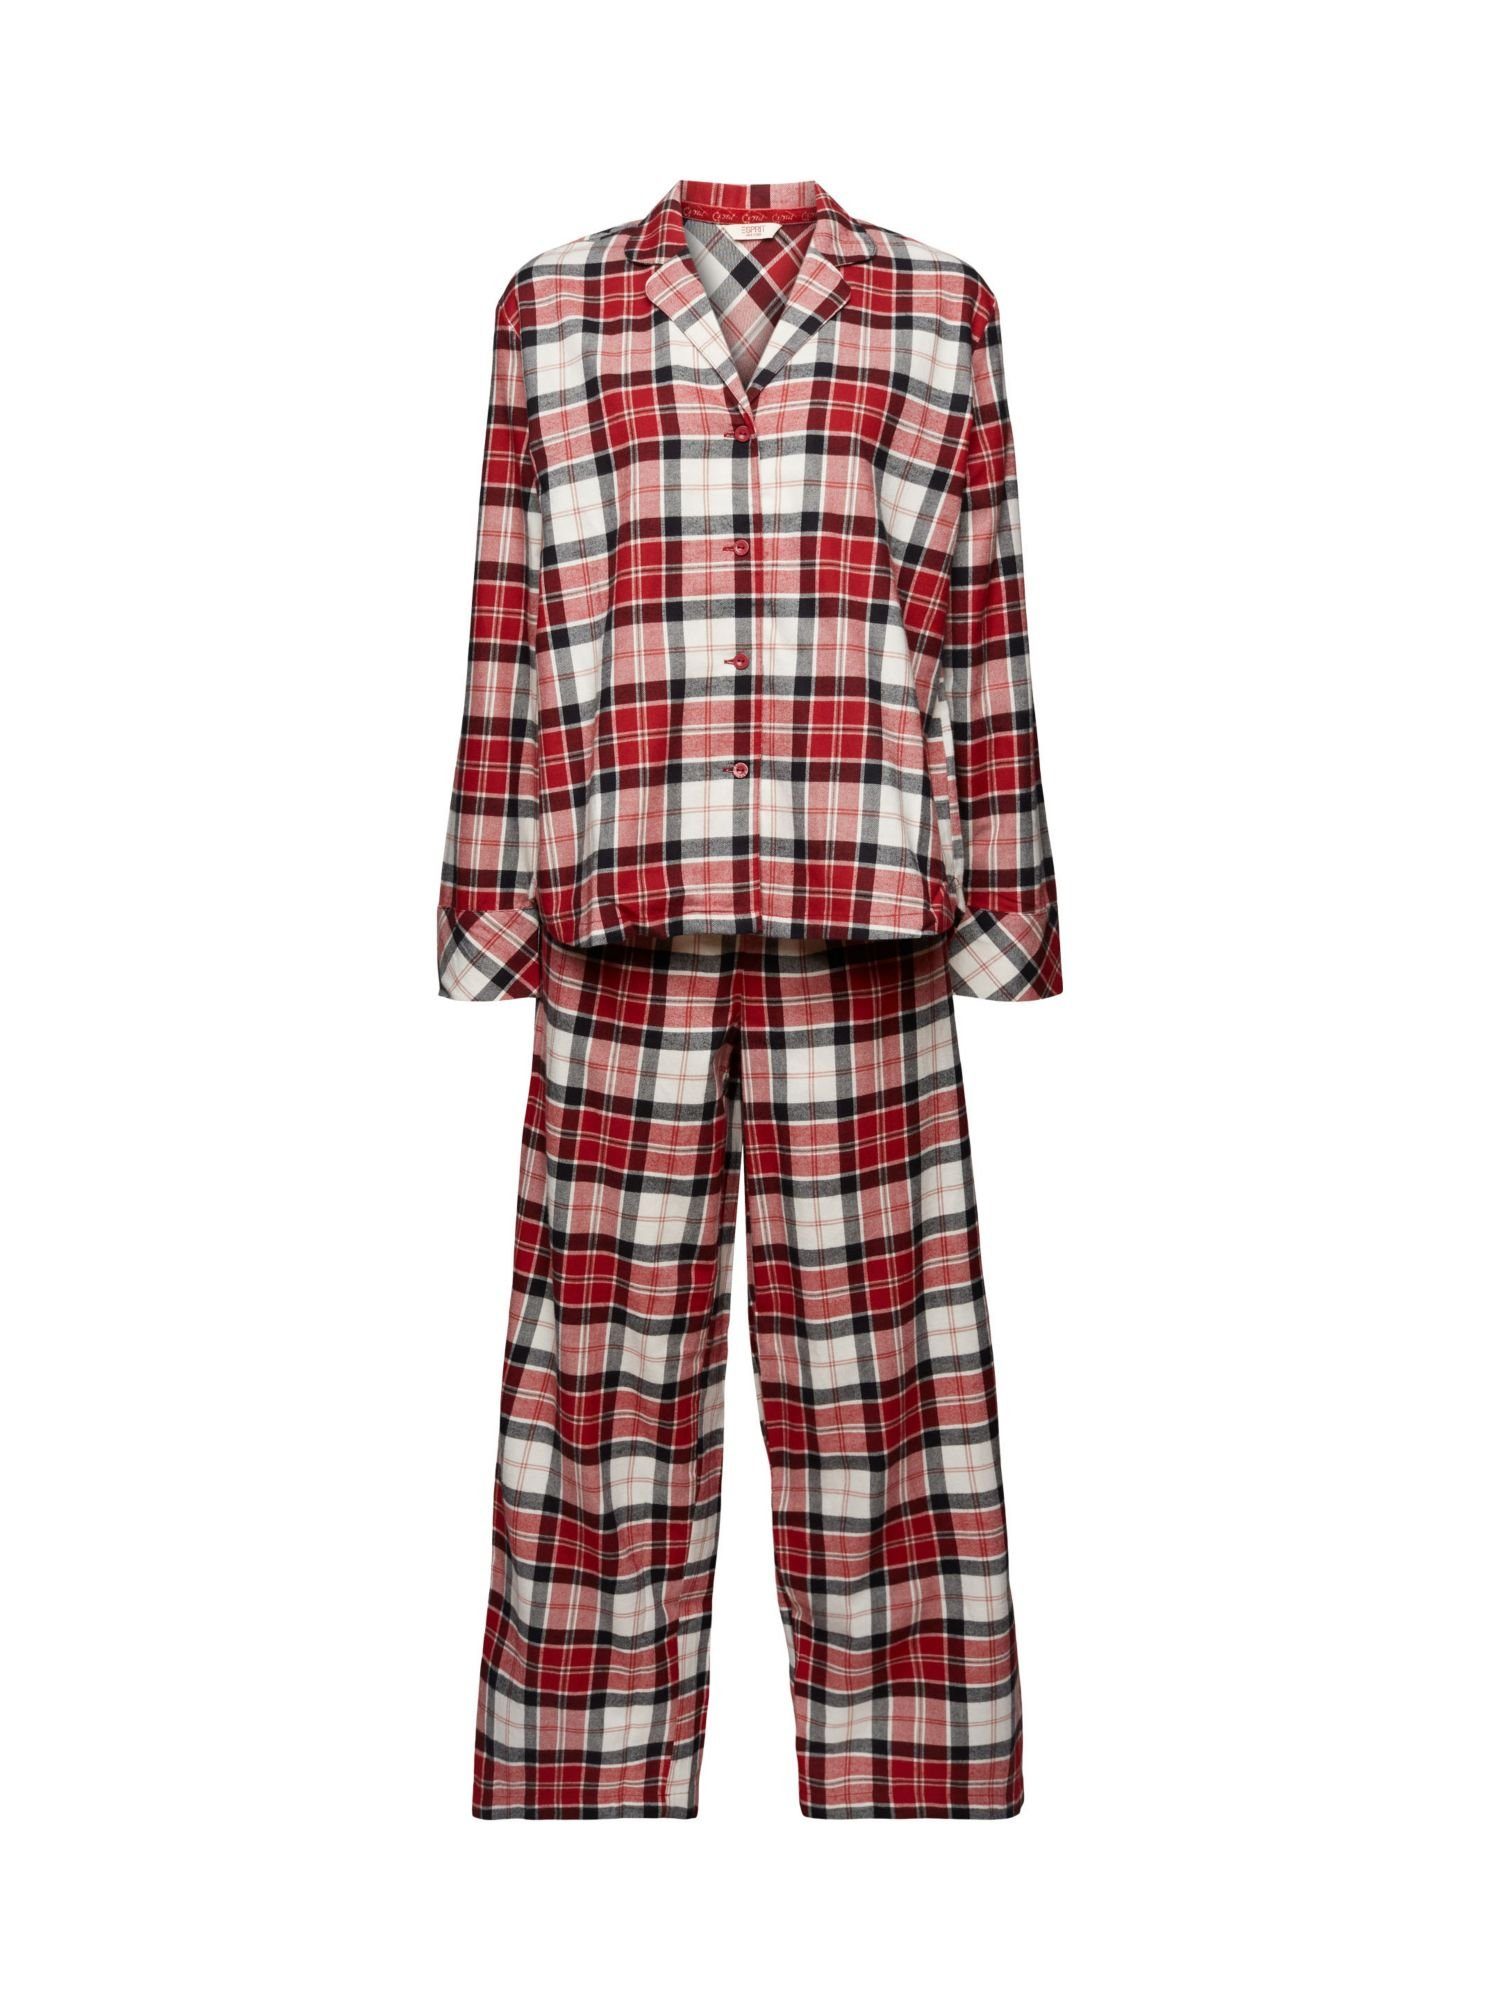 Flanell NEW kariertem Esprit RED Pyjama aus Pyjama-Set